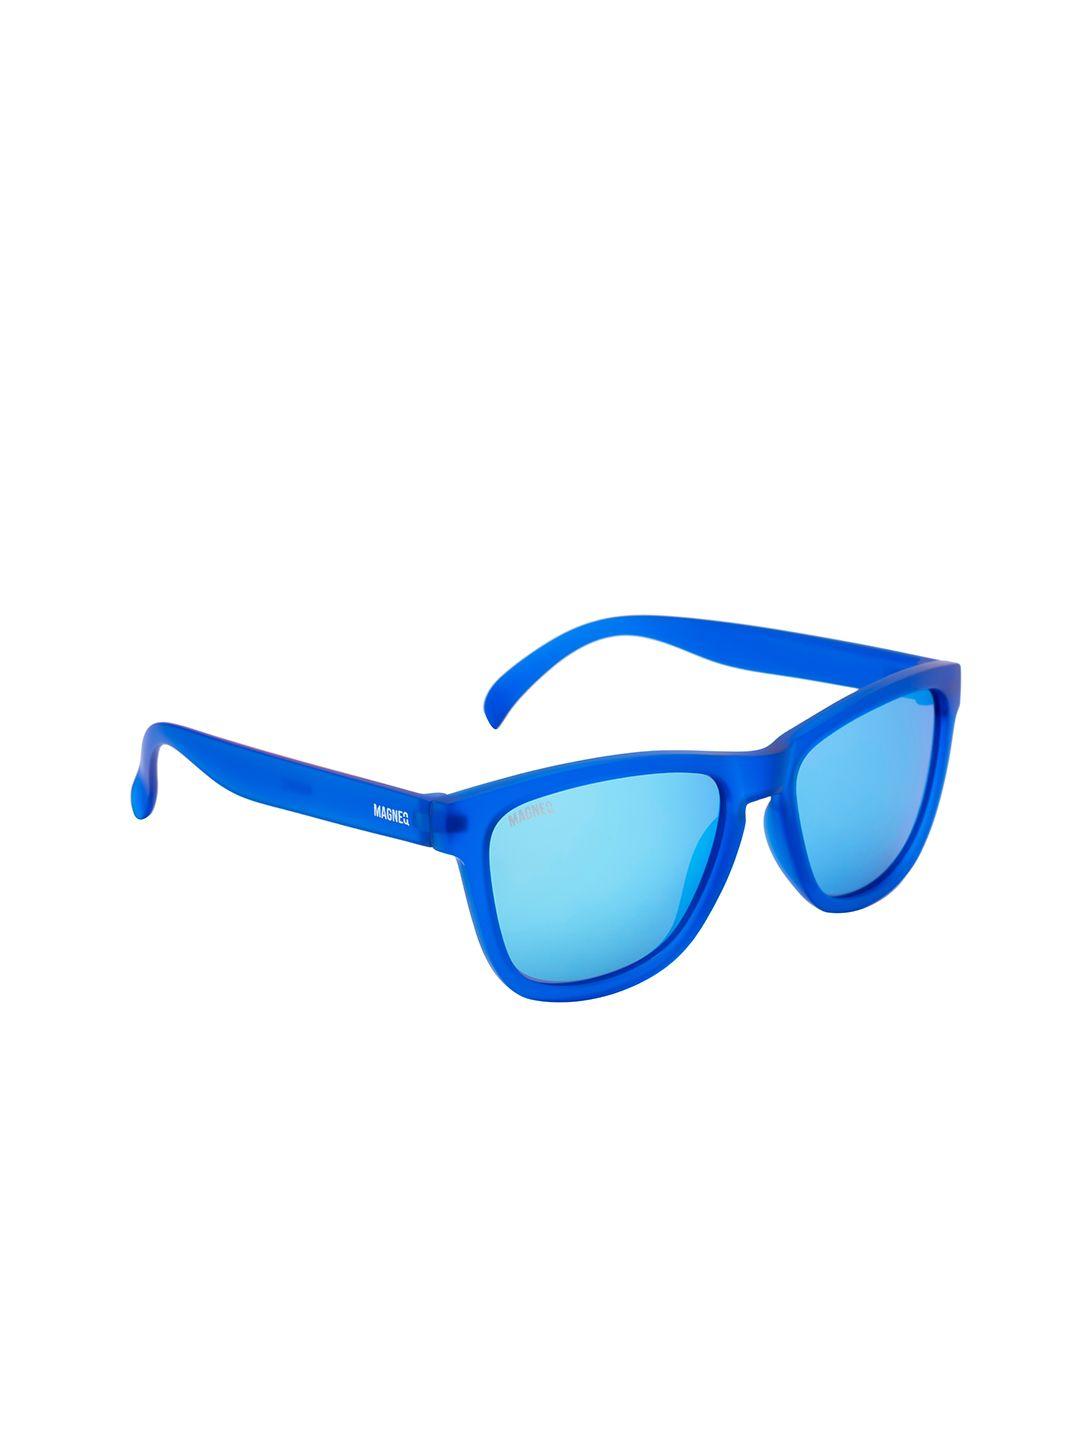 magneq unisex lens & square sunglasses with polarised lens mg 6030/s c9 5318